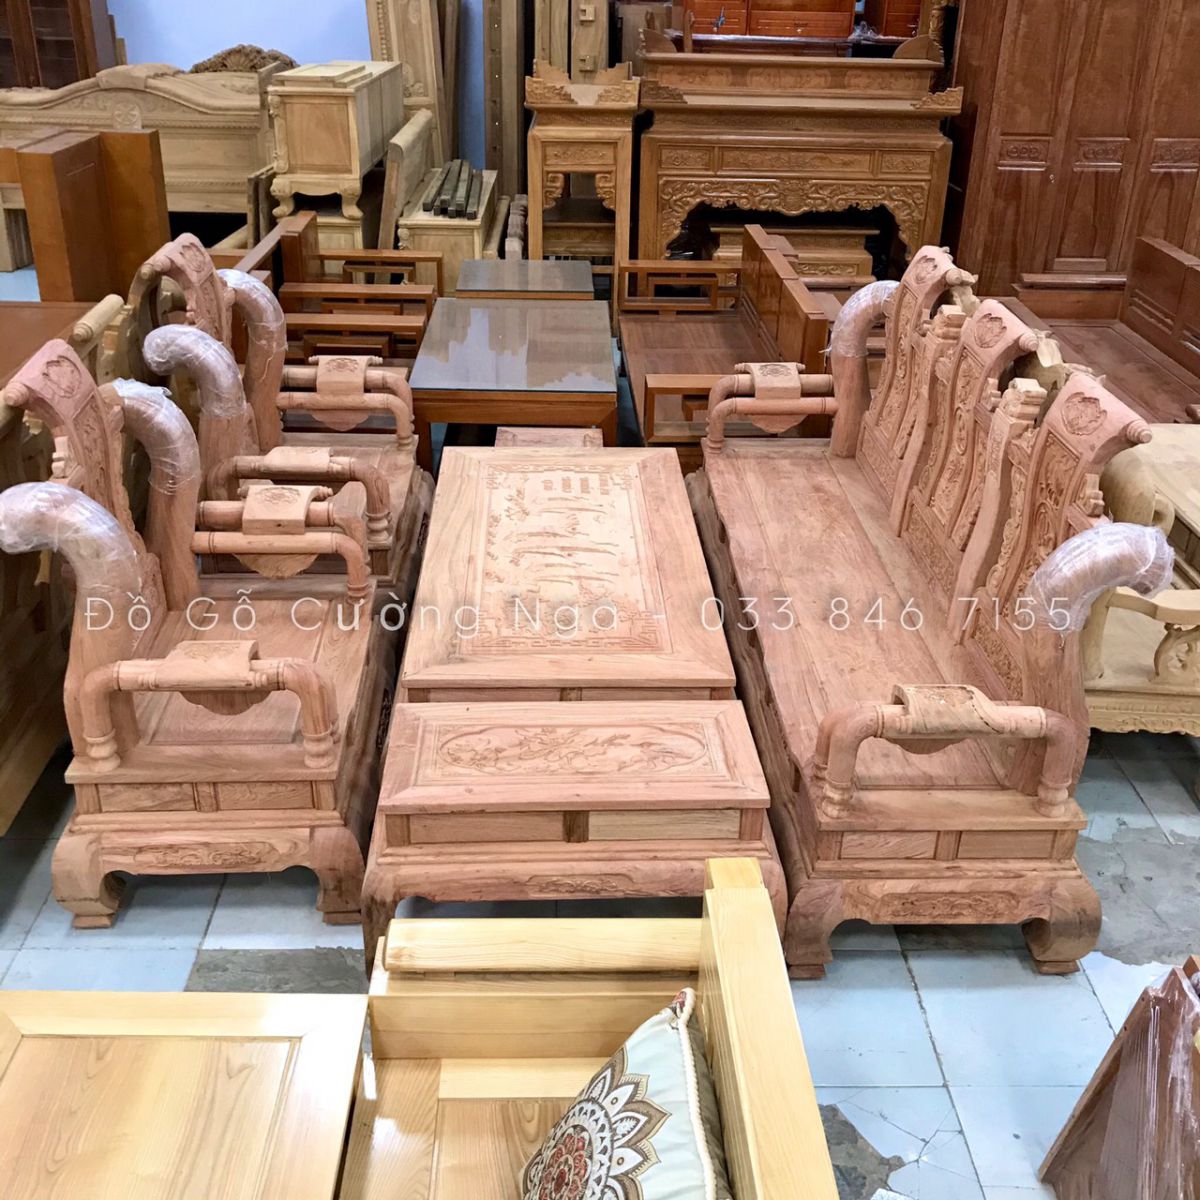 bộ bàn ghế salon gỗ hương đá tay 12